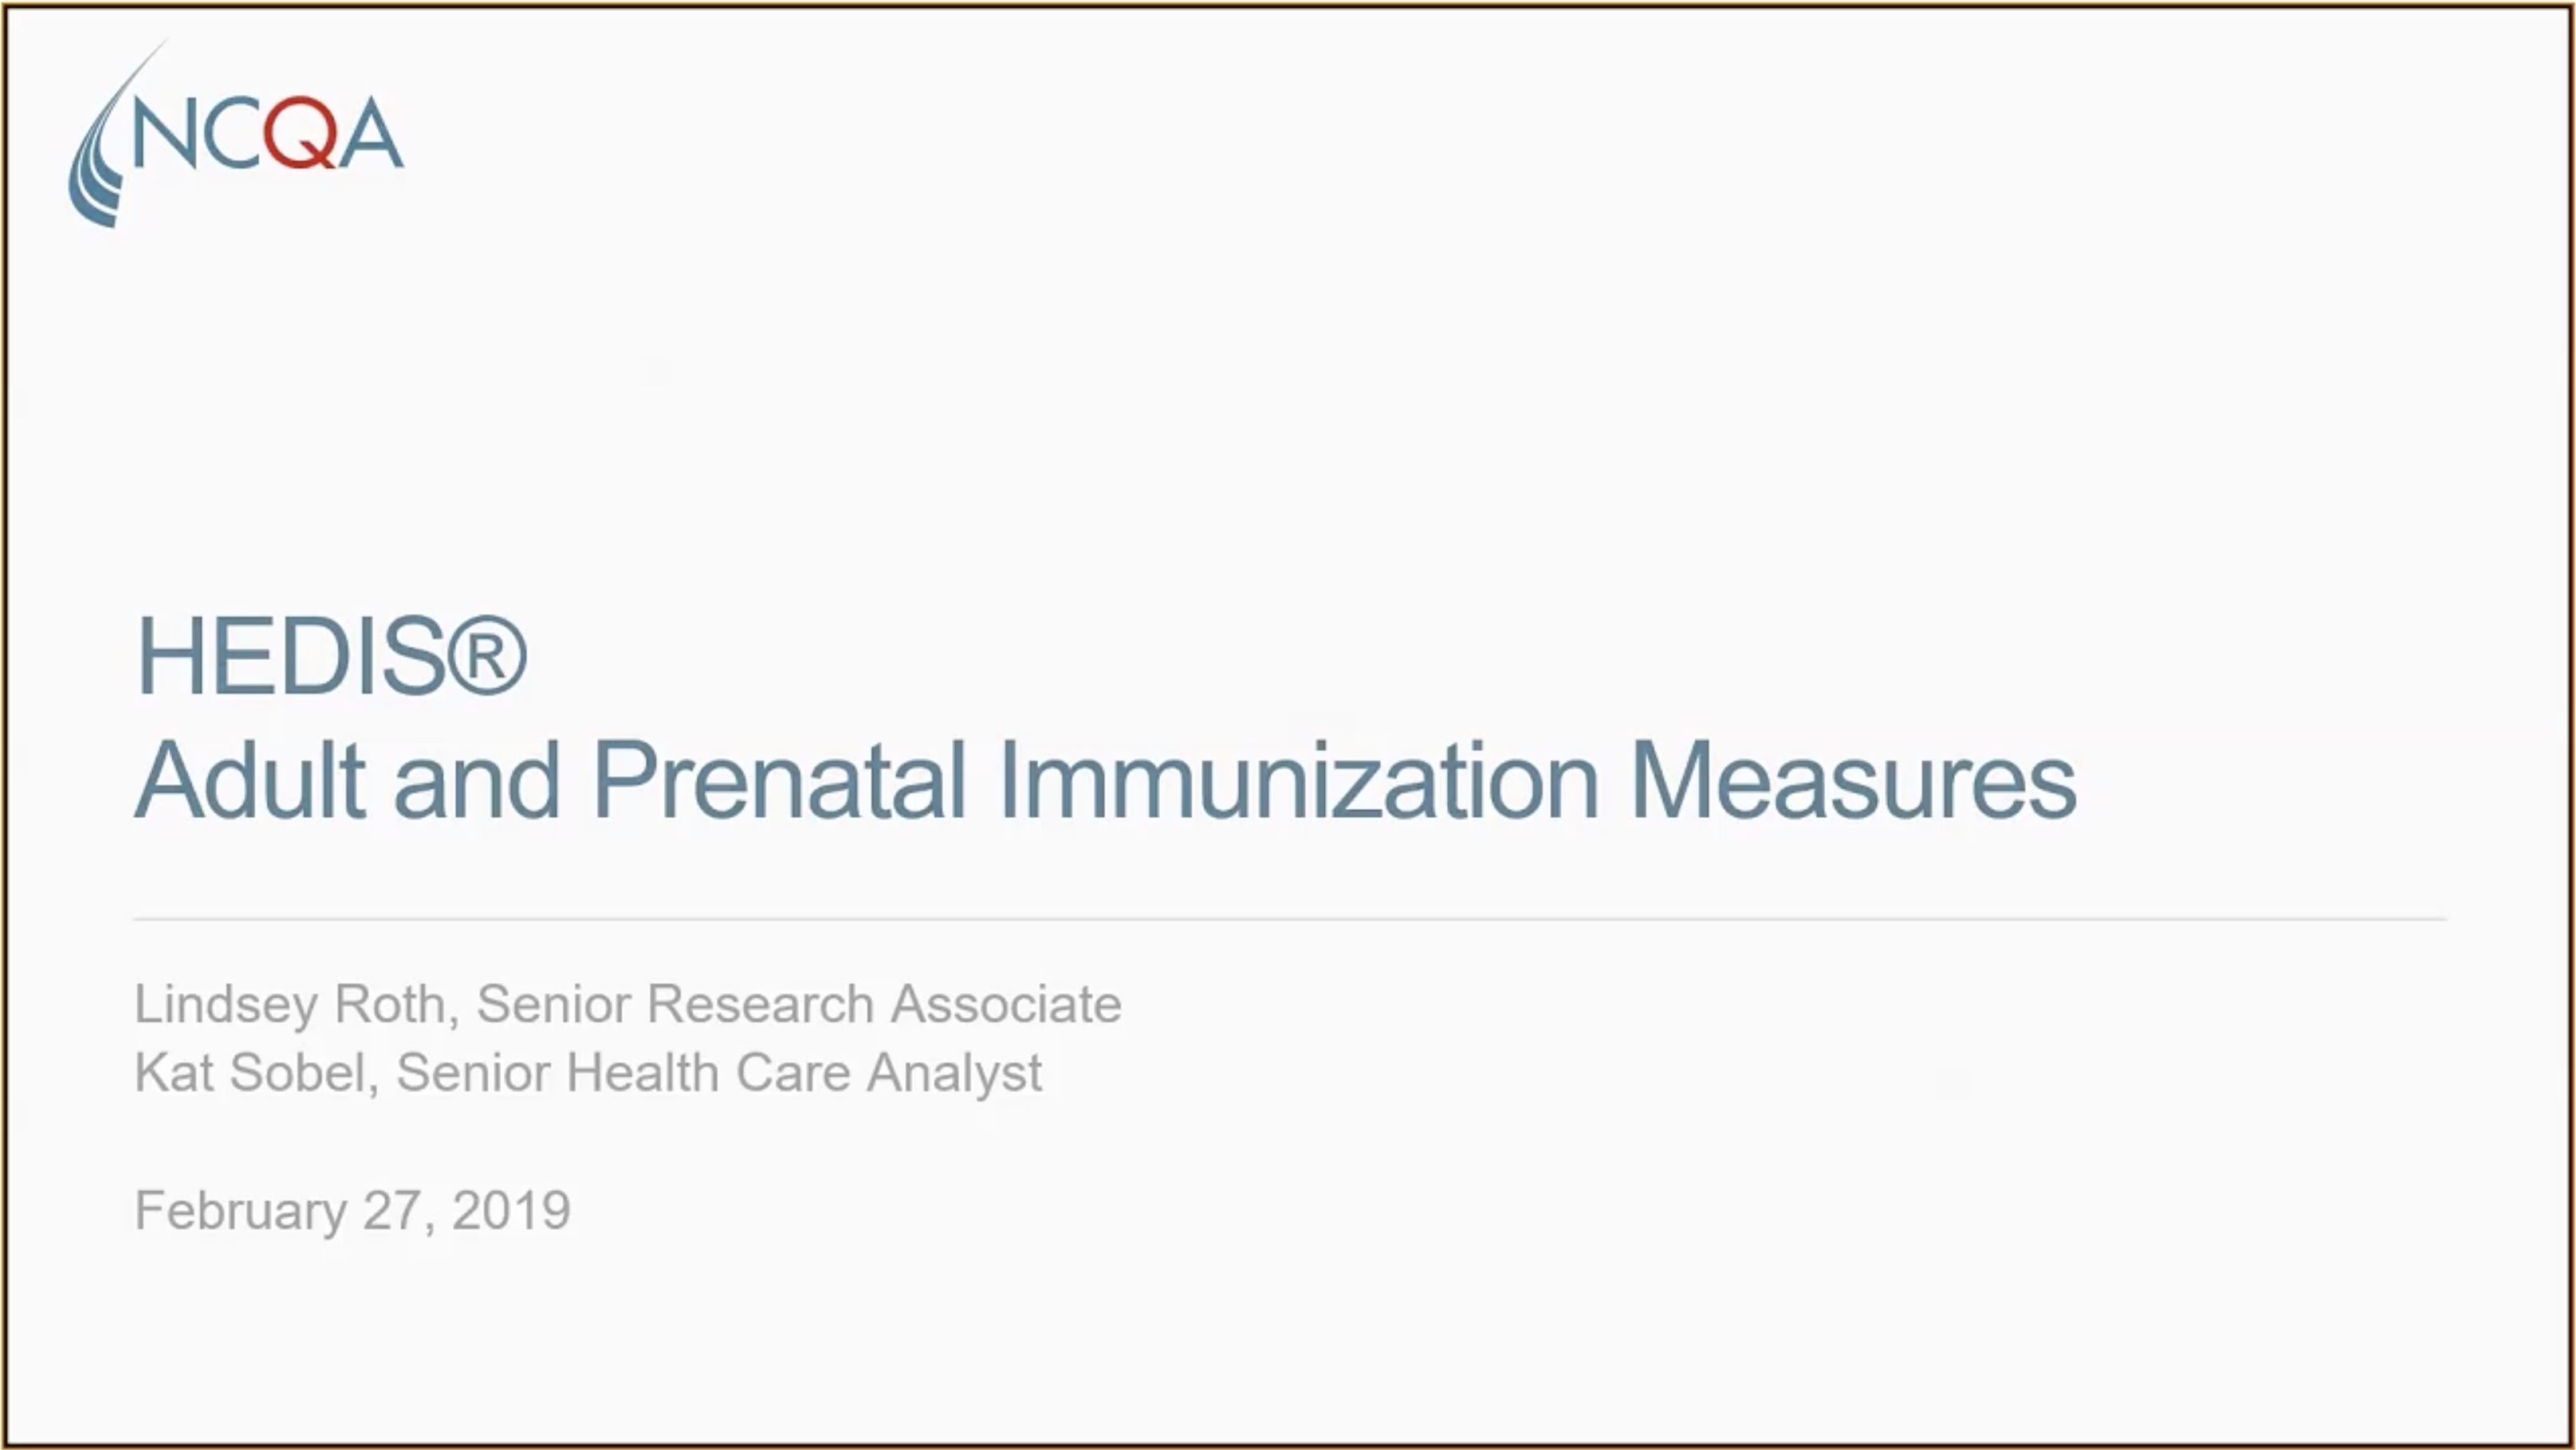 HEDIS Adult and Prenatal Immunization Measures NCQA